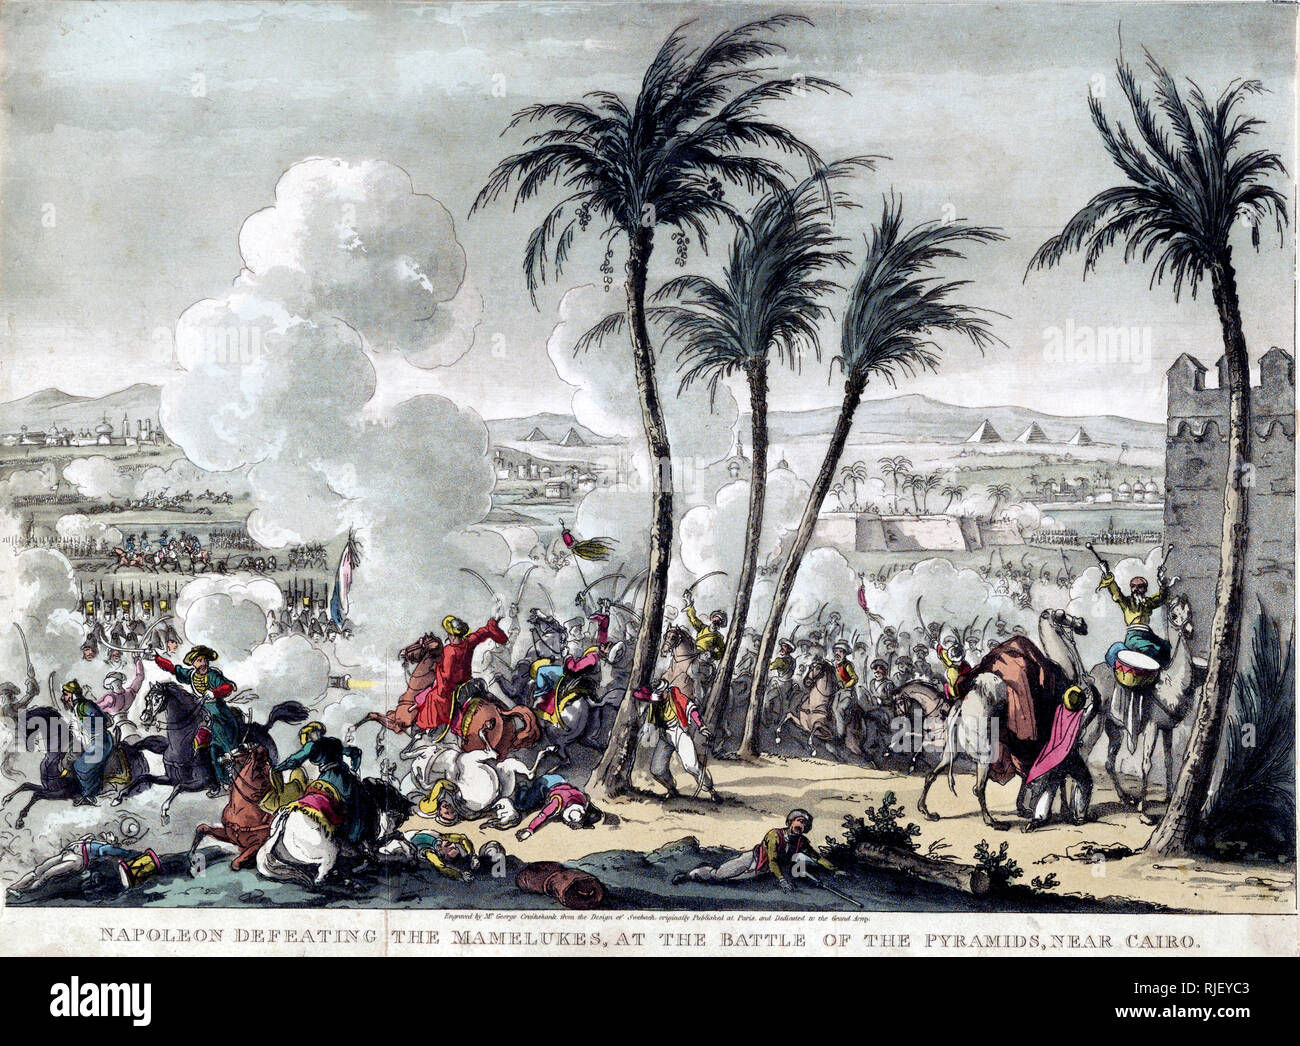 Imprimir muestra una escena de batalla mameluca desde detrás de las líneas, con el francés avanzando desde la izquierda Foto de stock